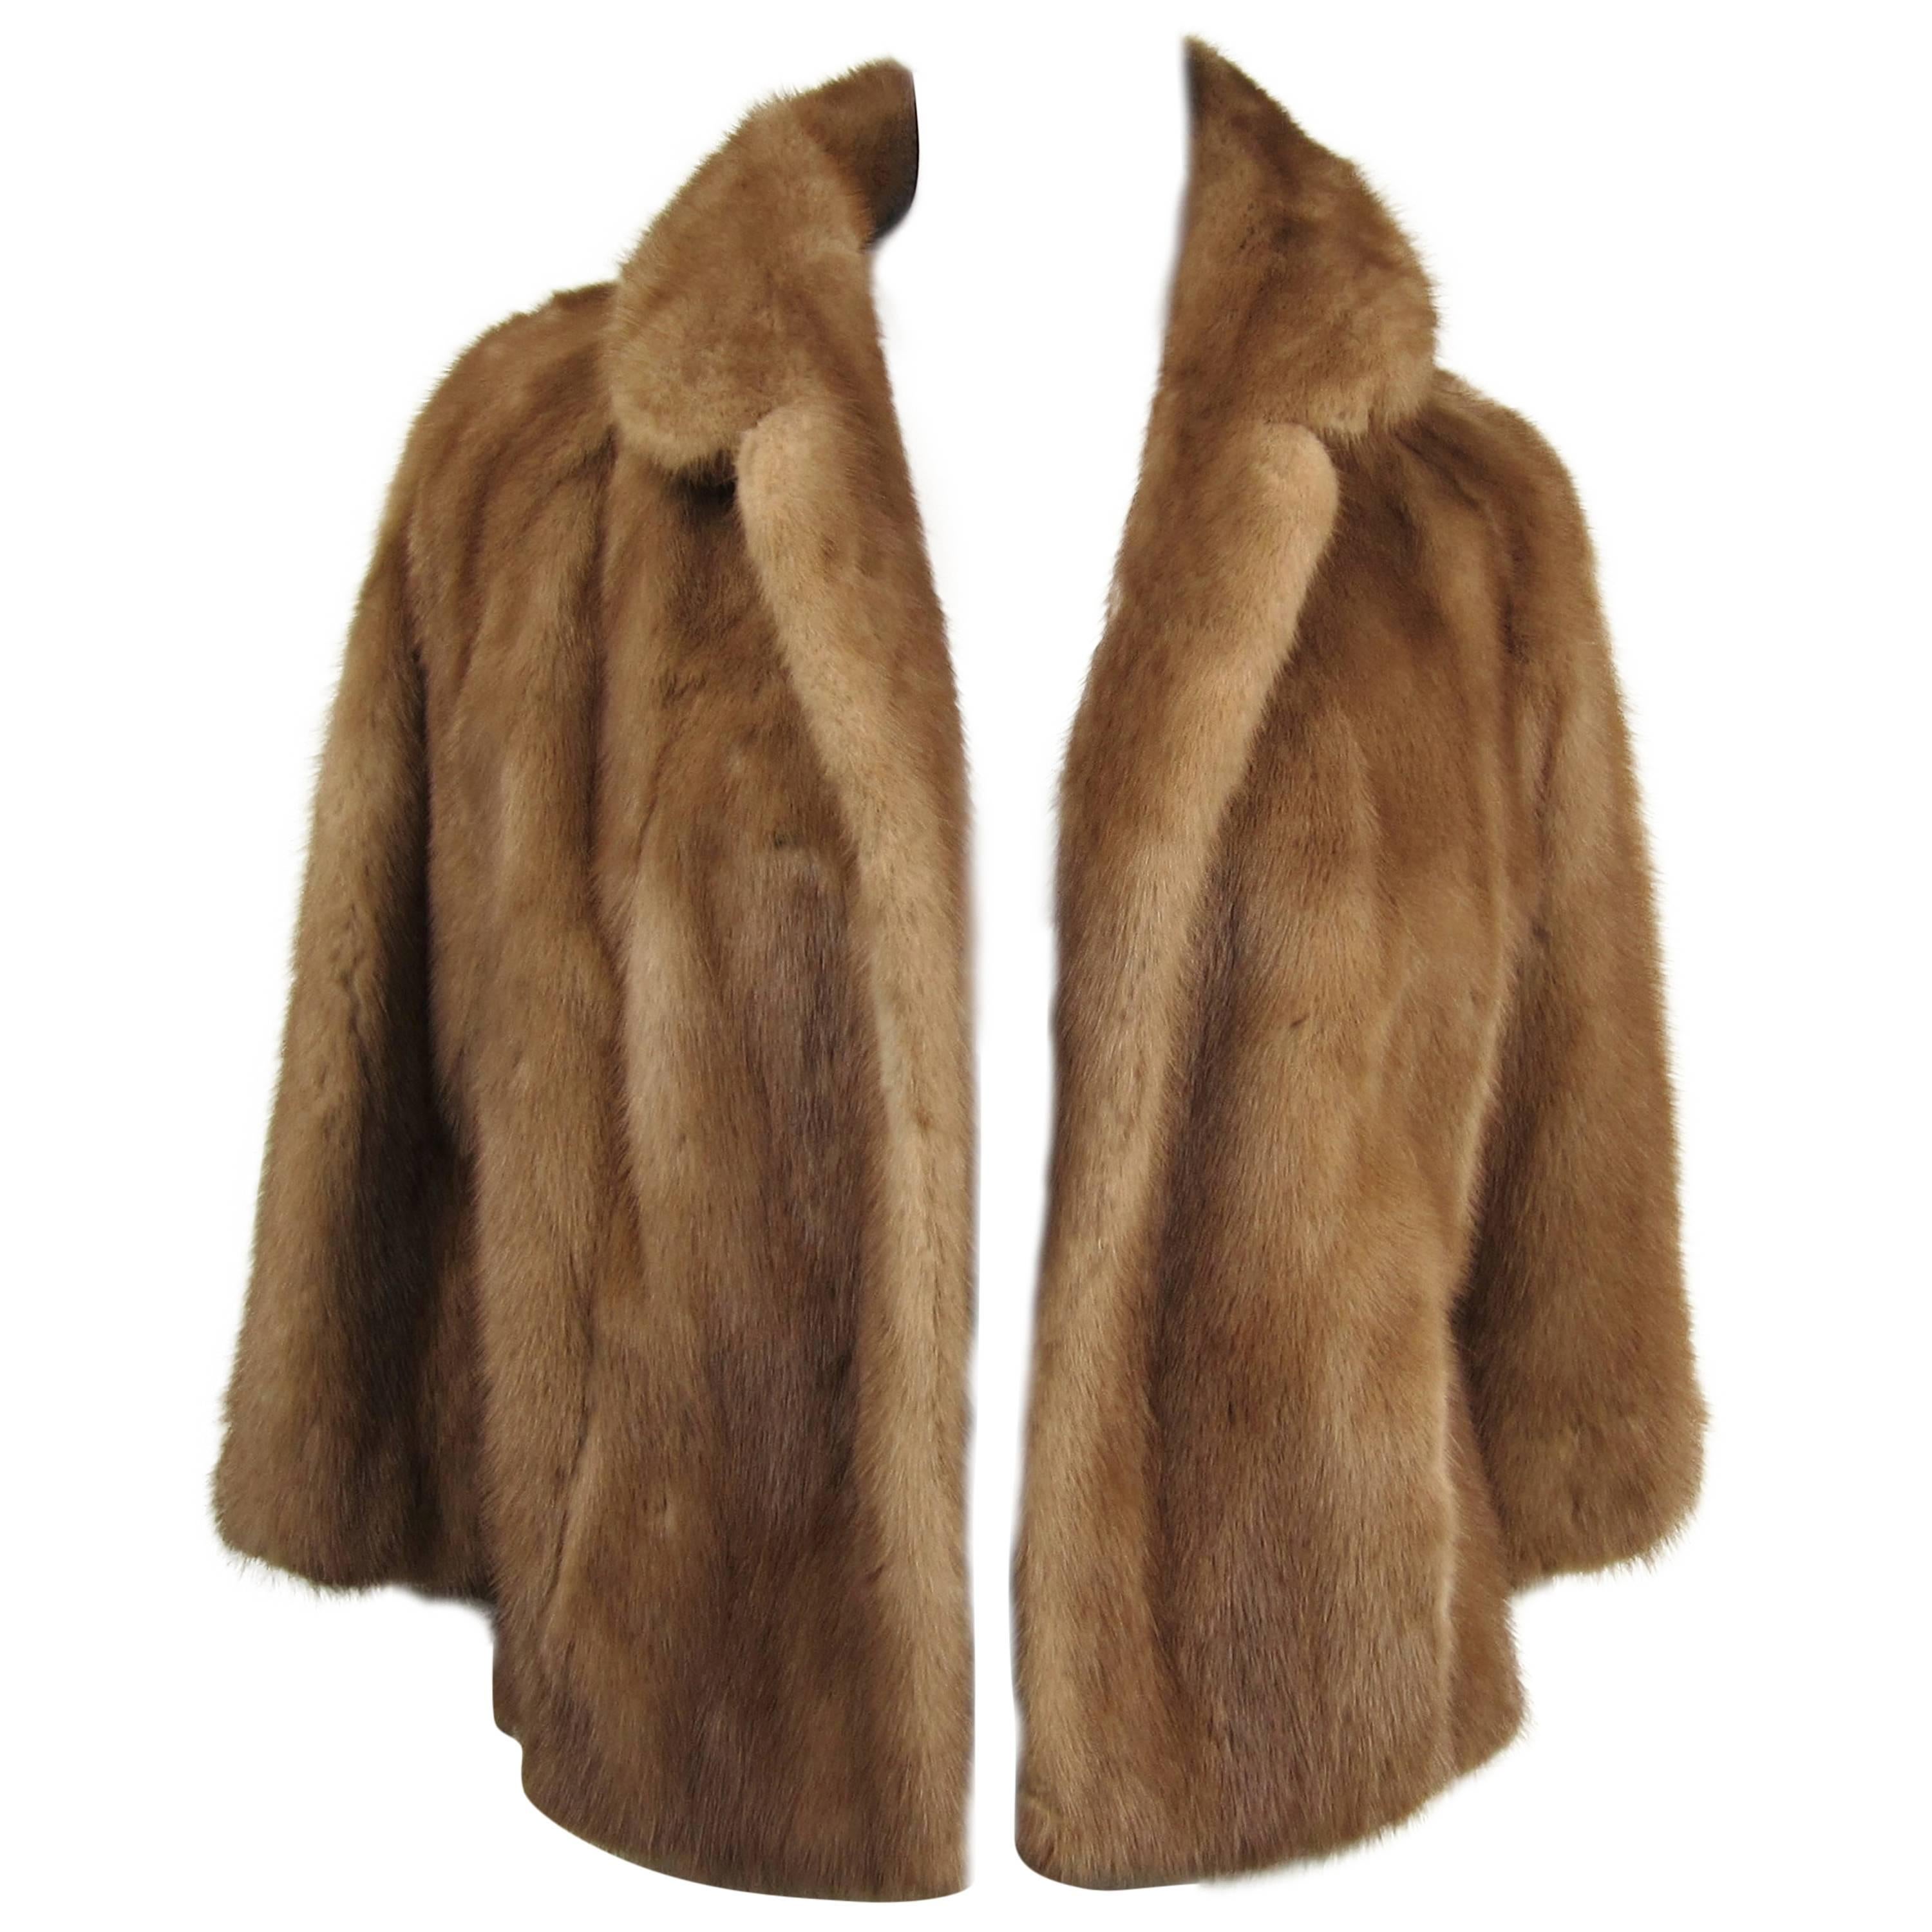  Mink Fur Shrug Jacket Stole-Vintage 1960s Hollywood Glam Pastel